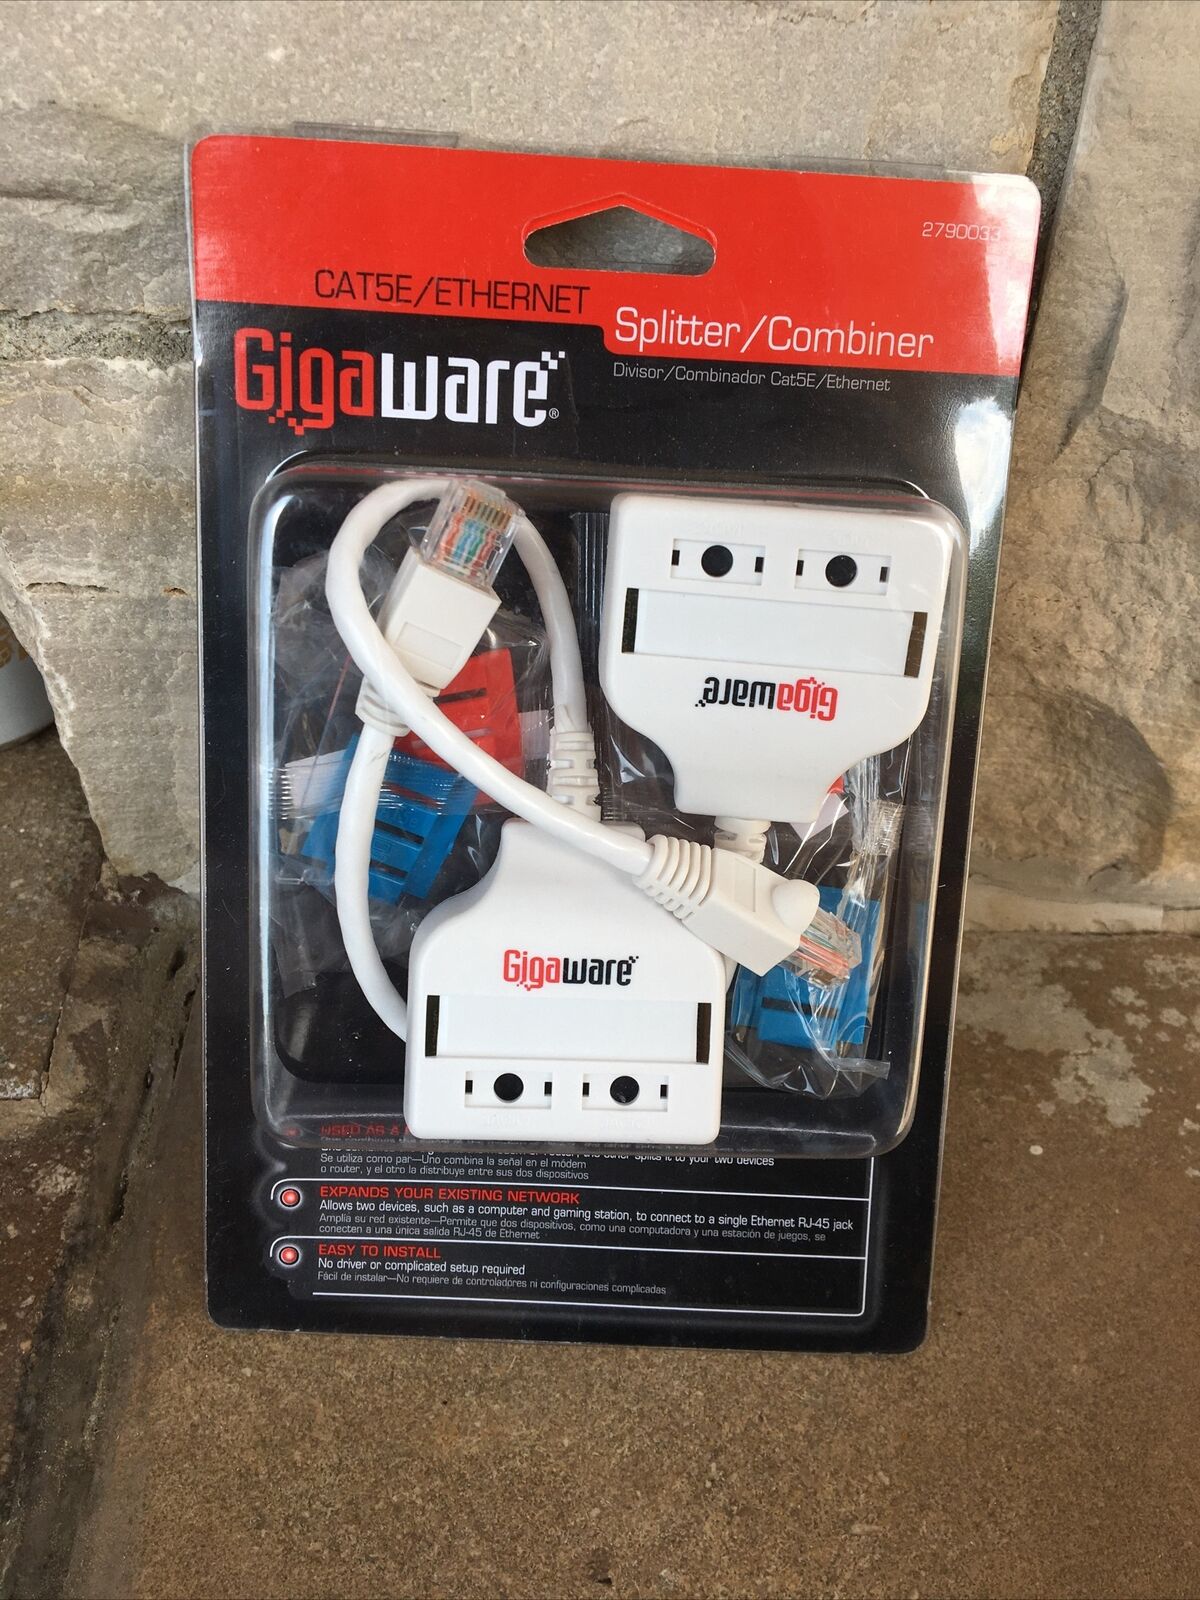 Gigaware RadioShack Cat5E/Ethernet Splitter/Combiner 2790033 - Brand New